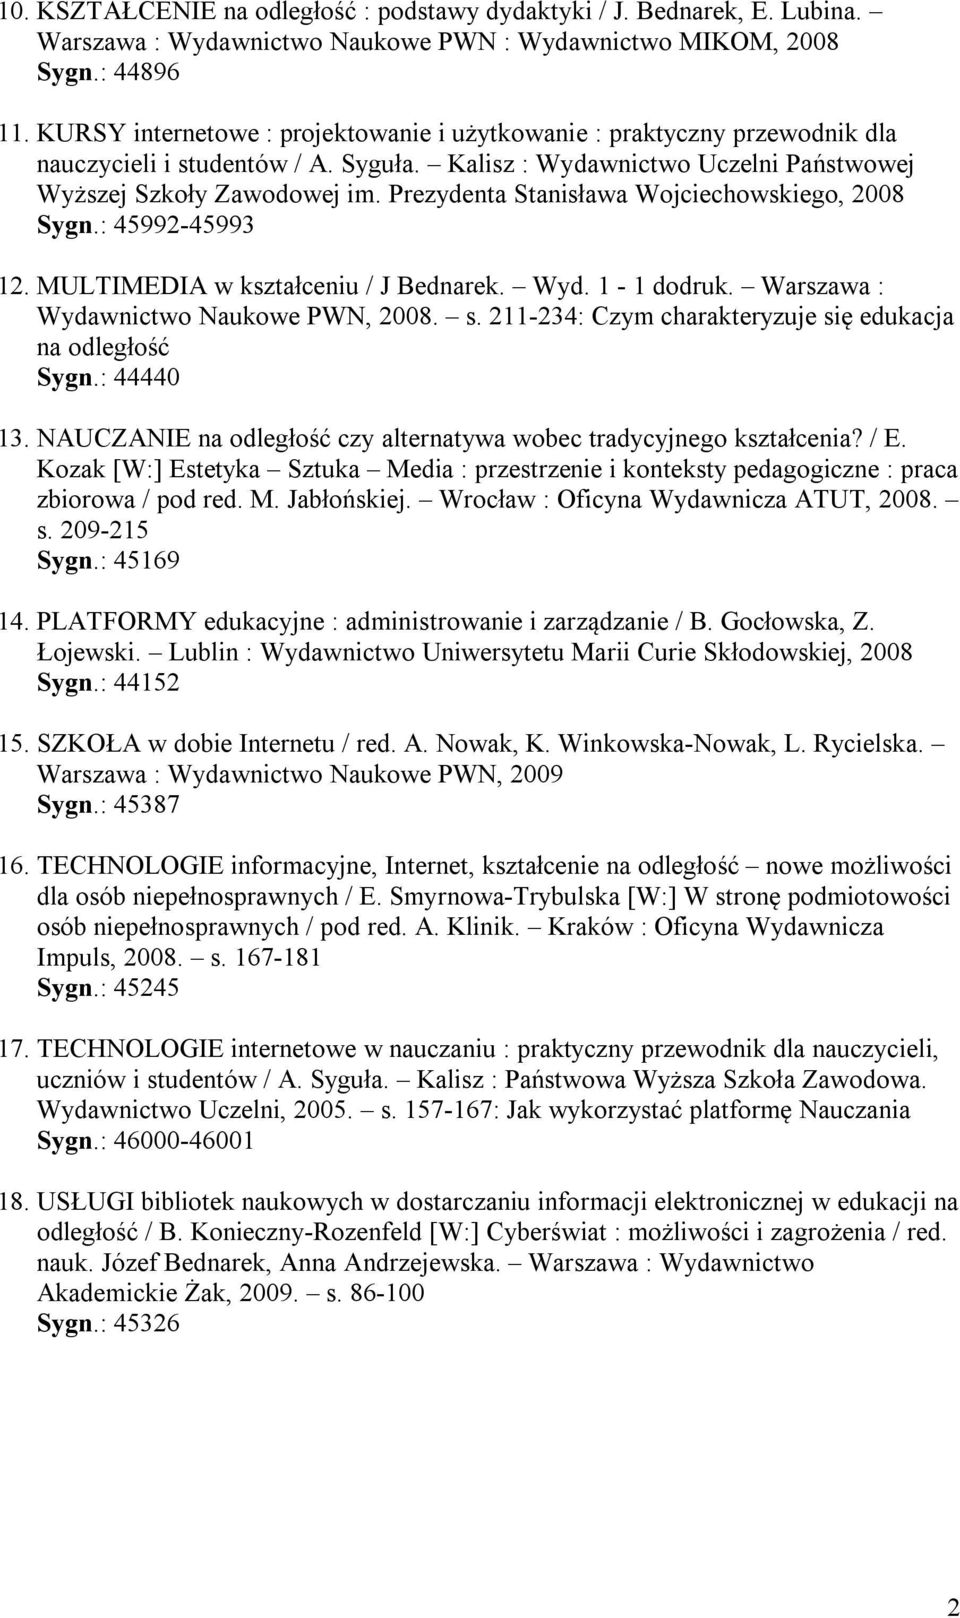 Prezydenta Stanisława Wojciechowskiego, 2008 Sygn.: 45992-45993 12. MULTIMEDIA w kształceniu / J Bednarek. Wyd. 1-1 dodruk. Warszawa : Wydawnictwo Naukowe PWN, 2008. s.